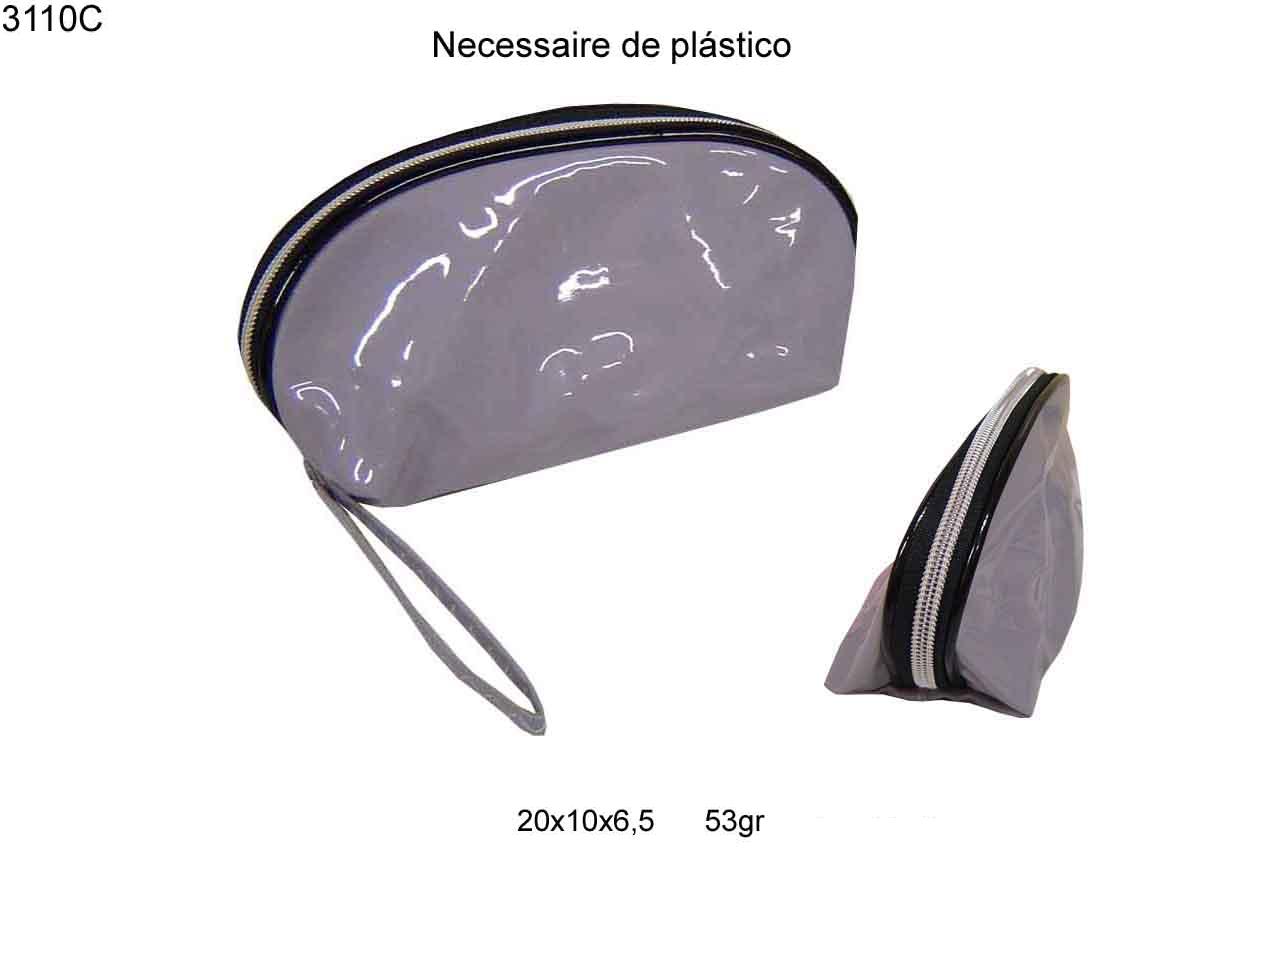 Necessaire de plastico (3110C)